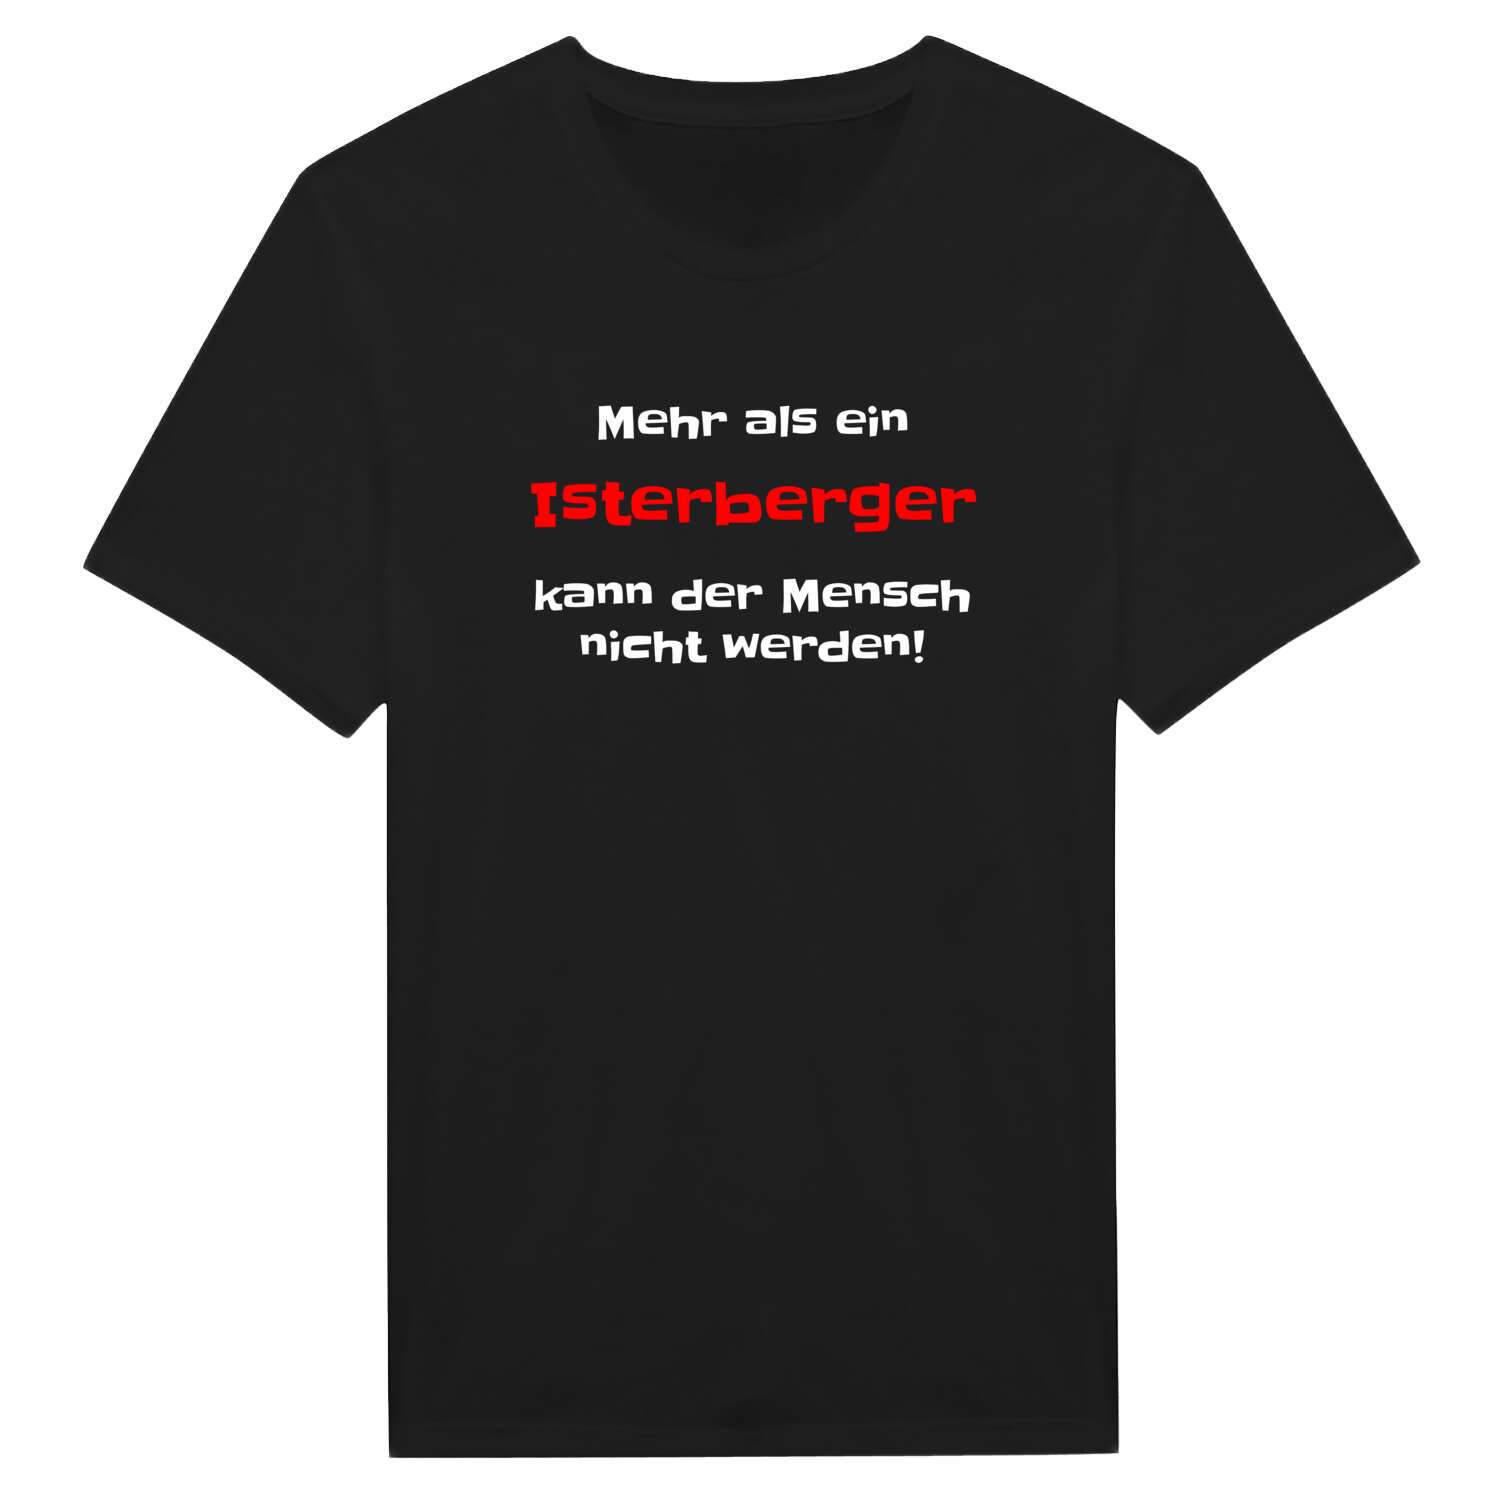 Isterberg T-Shirt »Mehr als ein«